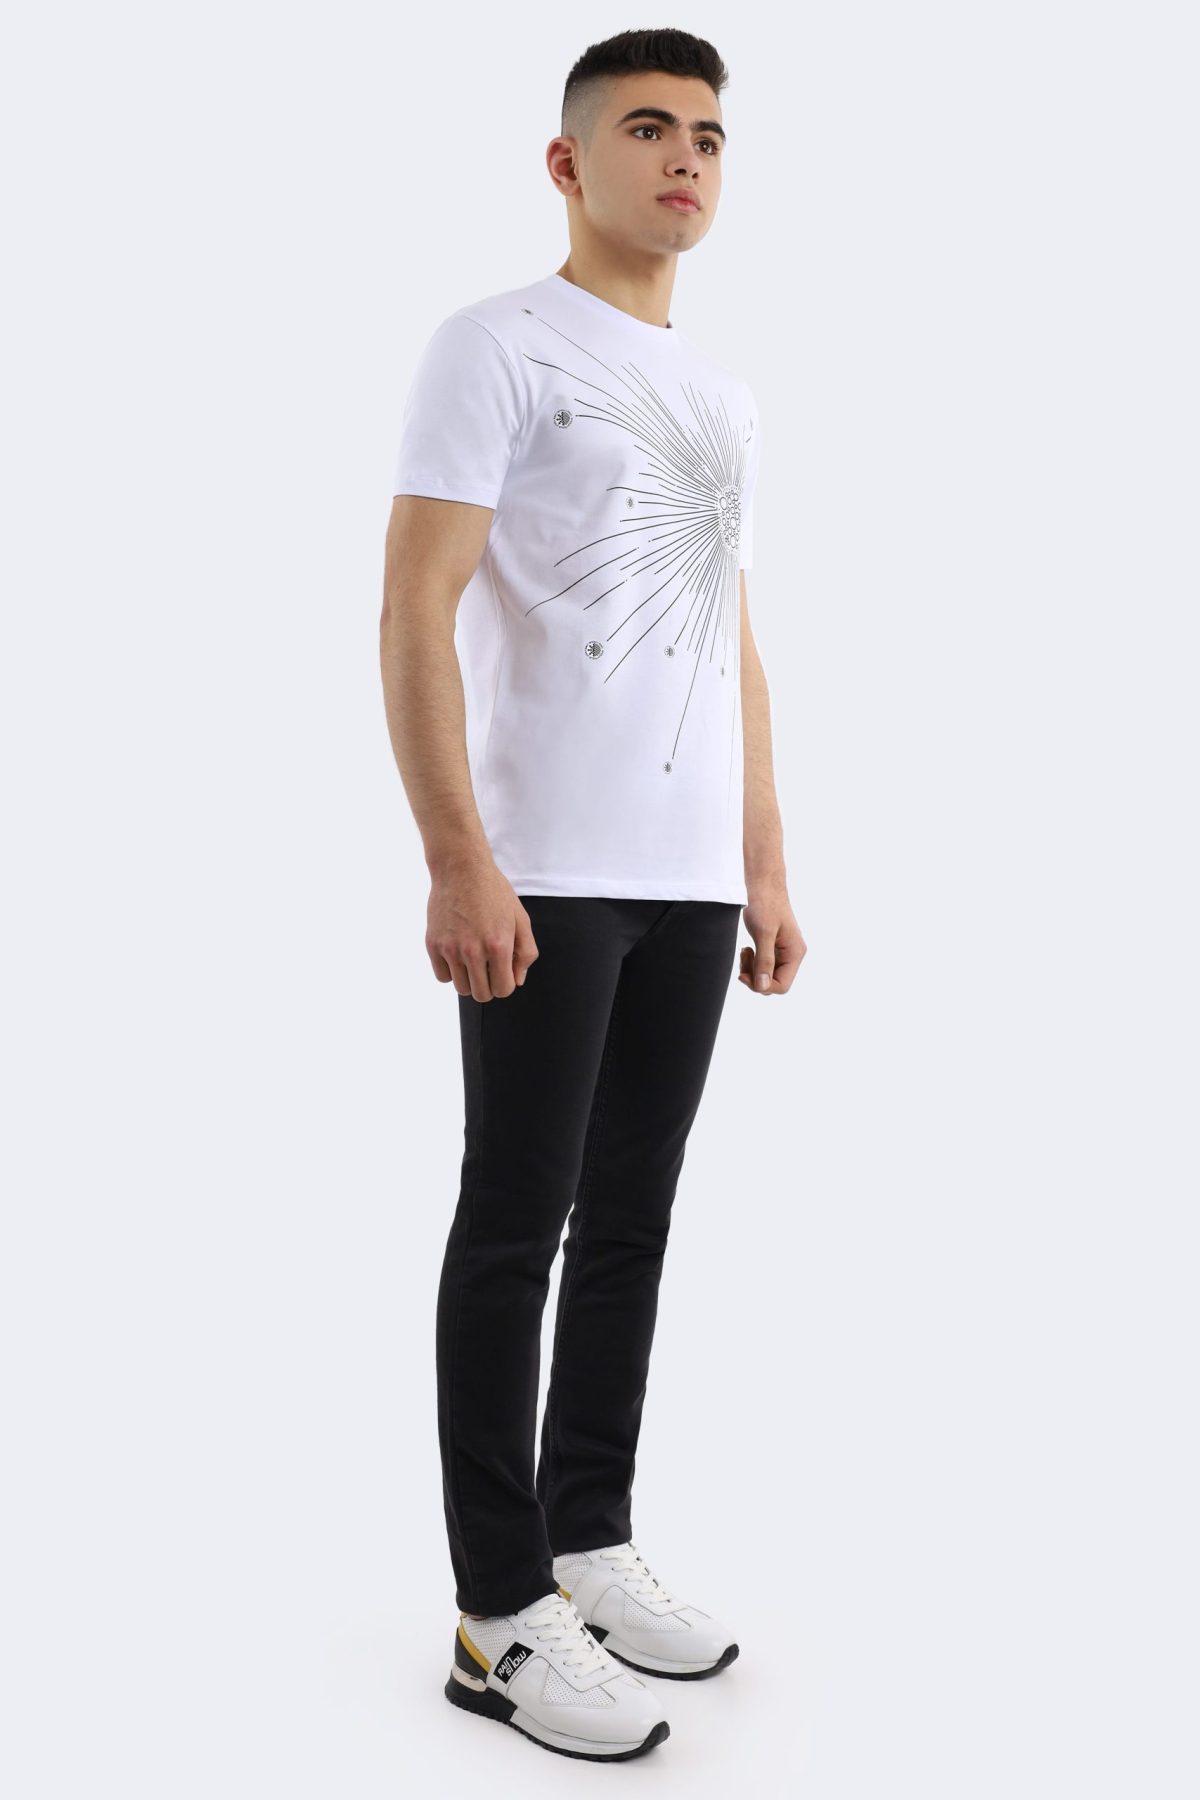 Rainsnow men t-shirt – White-Anthracite-1415